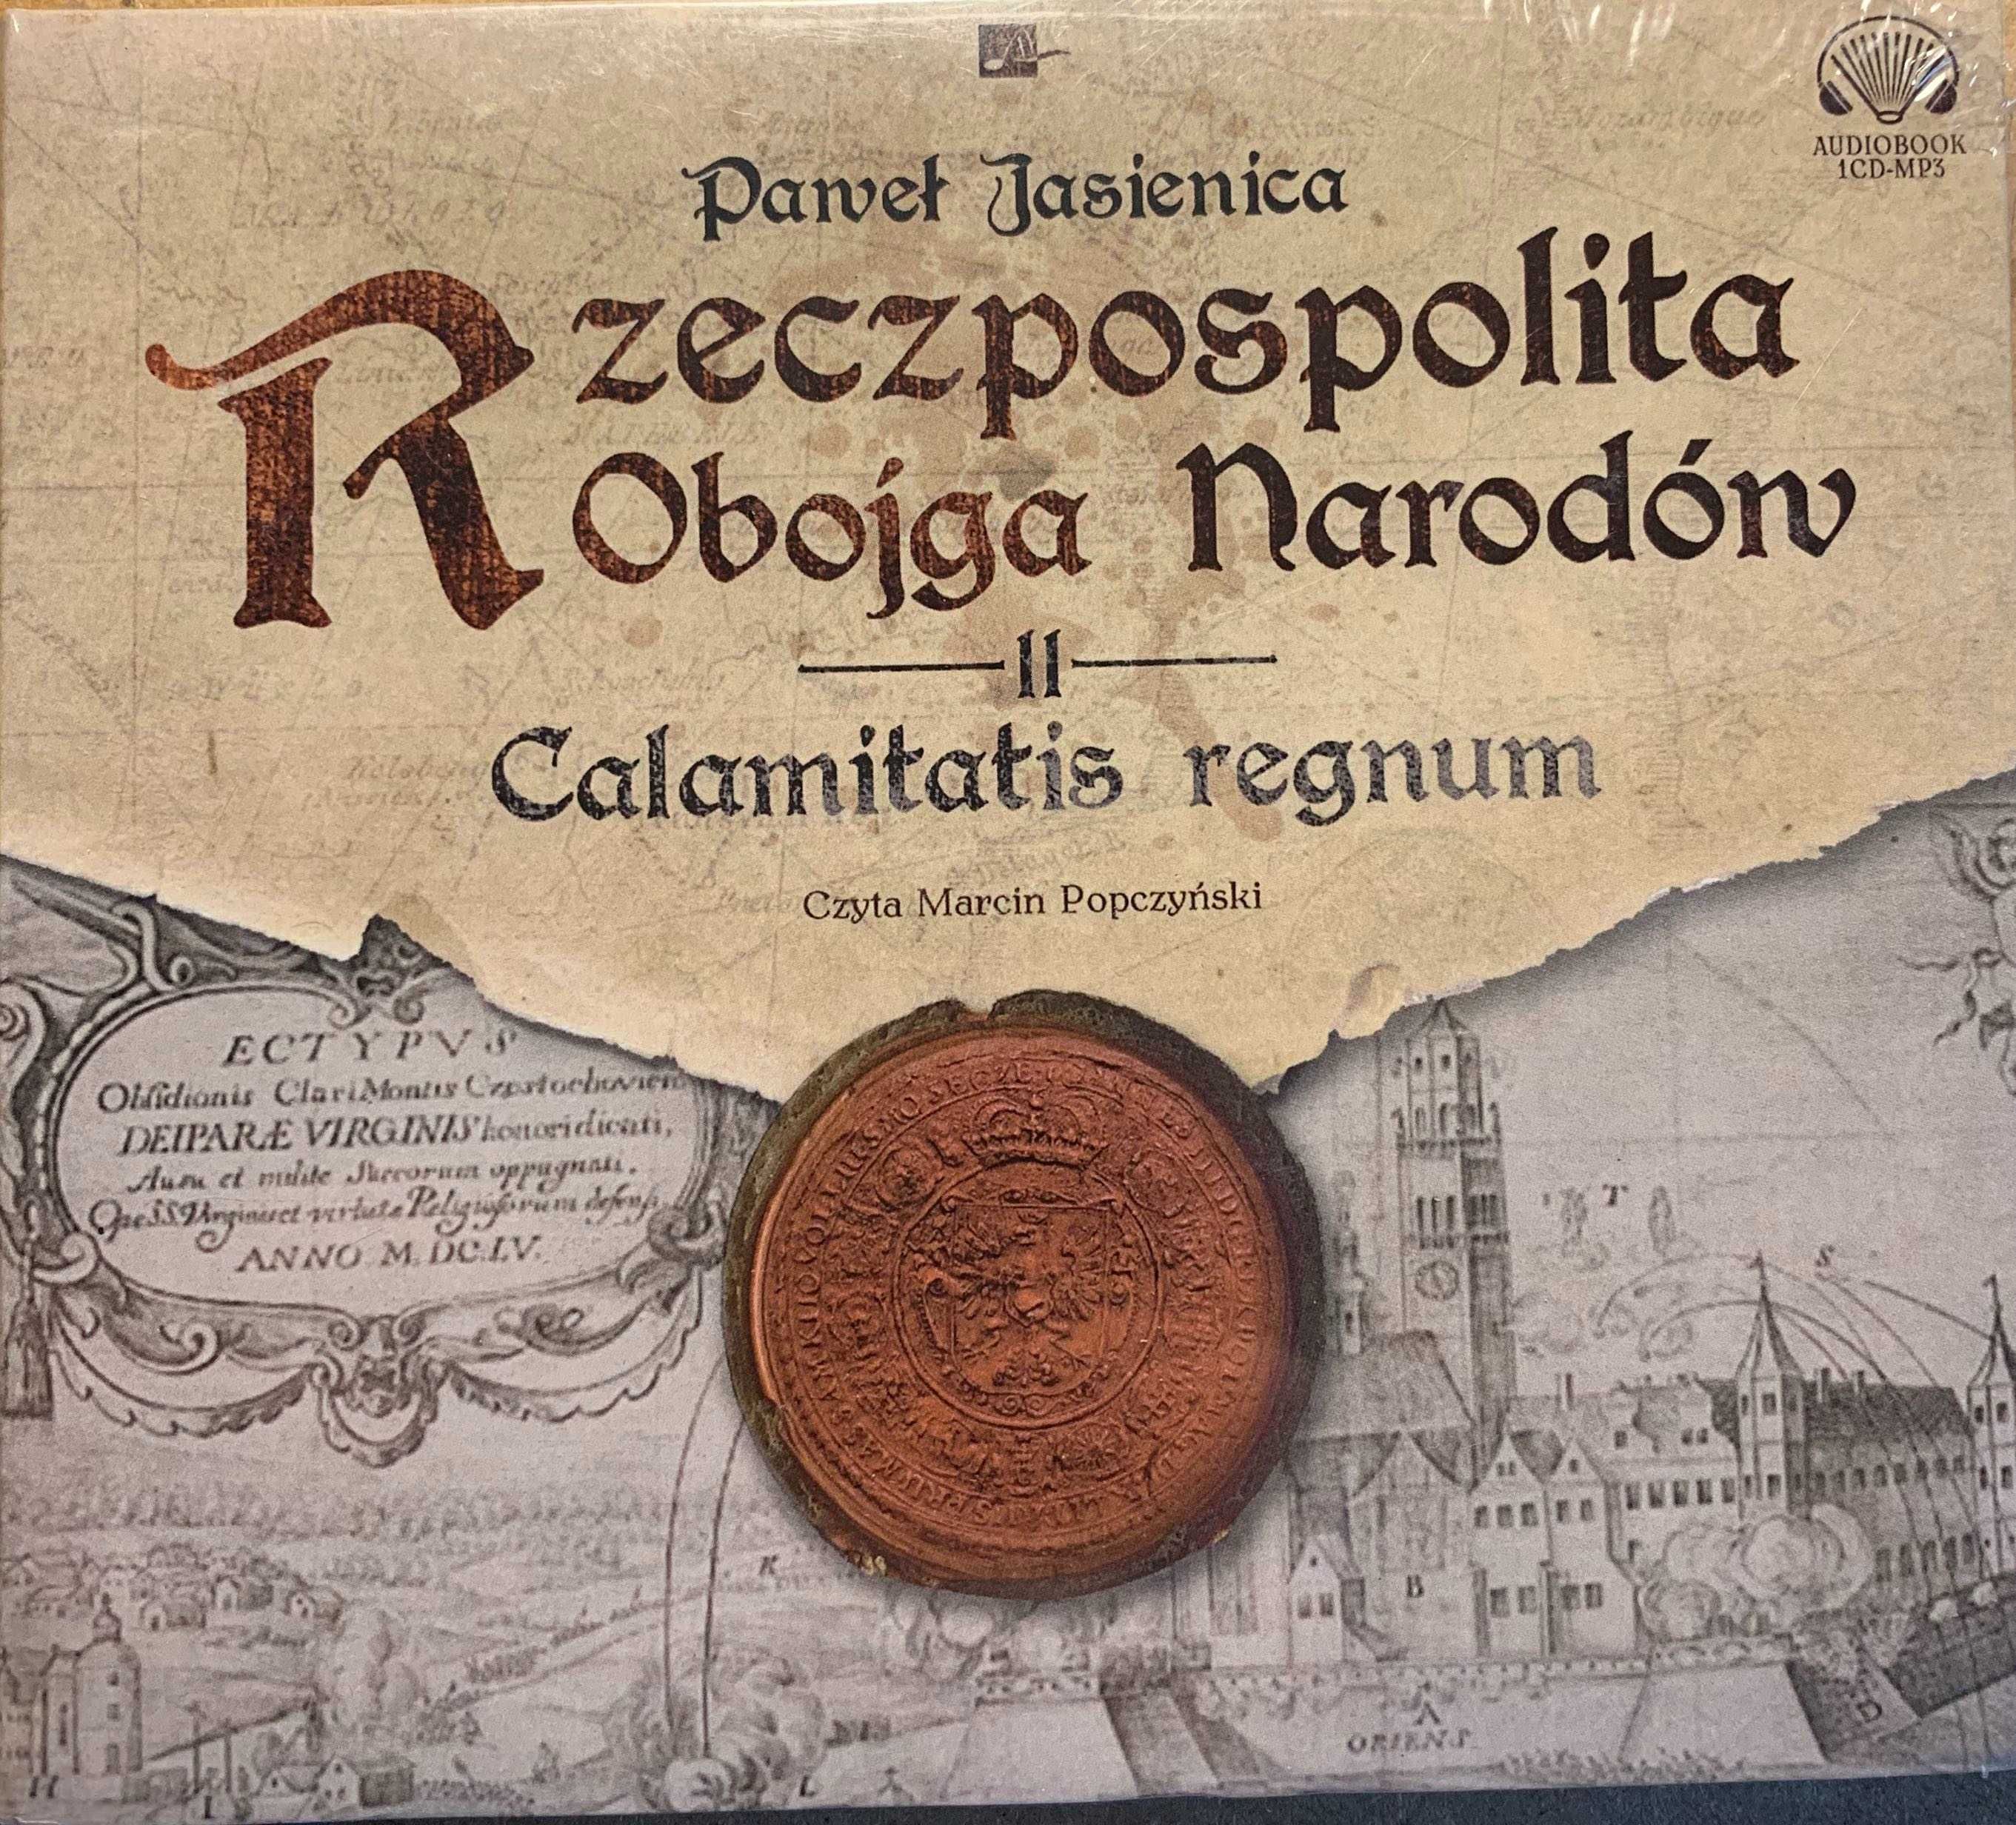 Audiobook "Rzeczpospolita Obojga Narodów" Paweł Jasienica